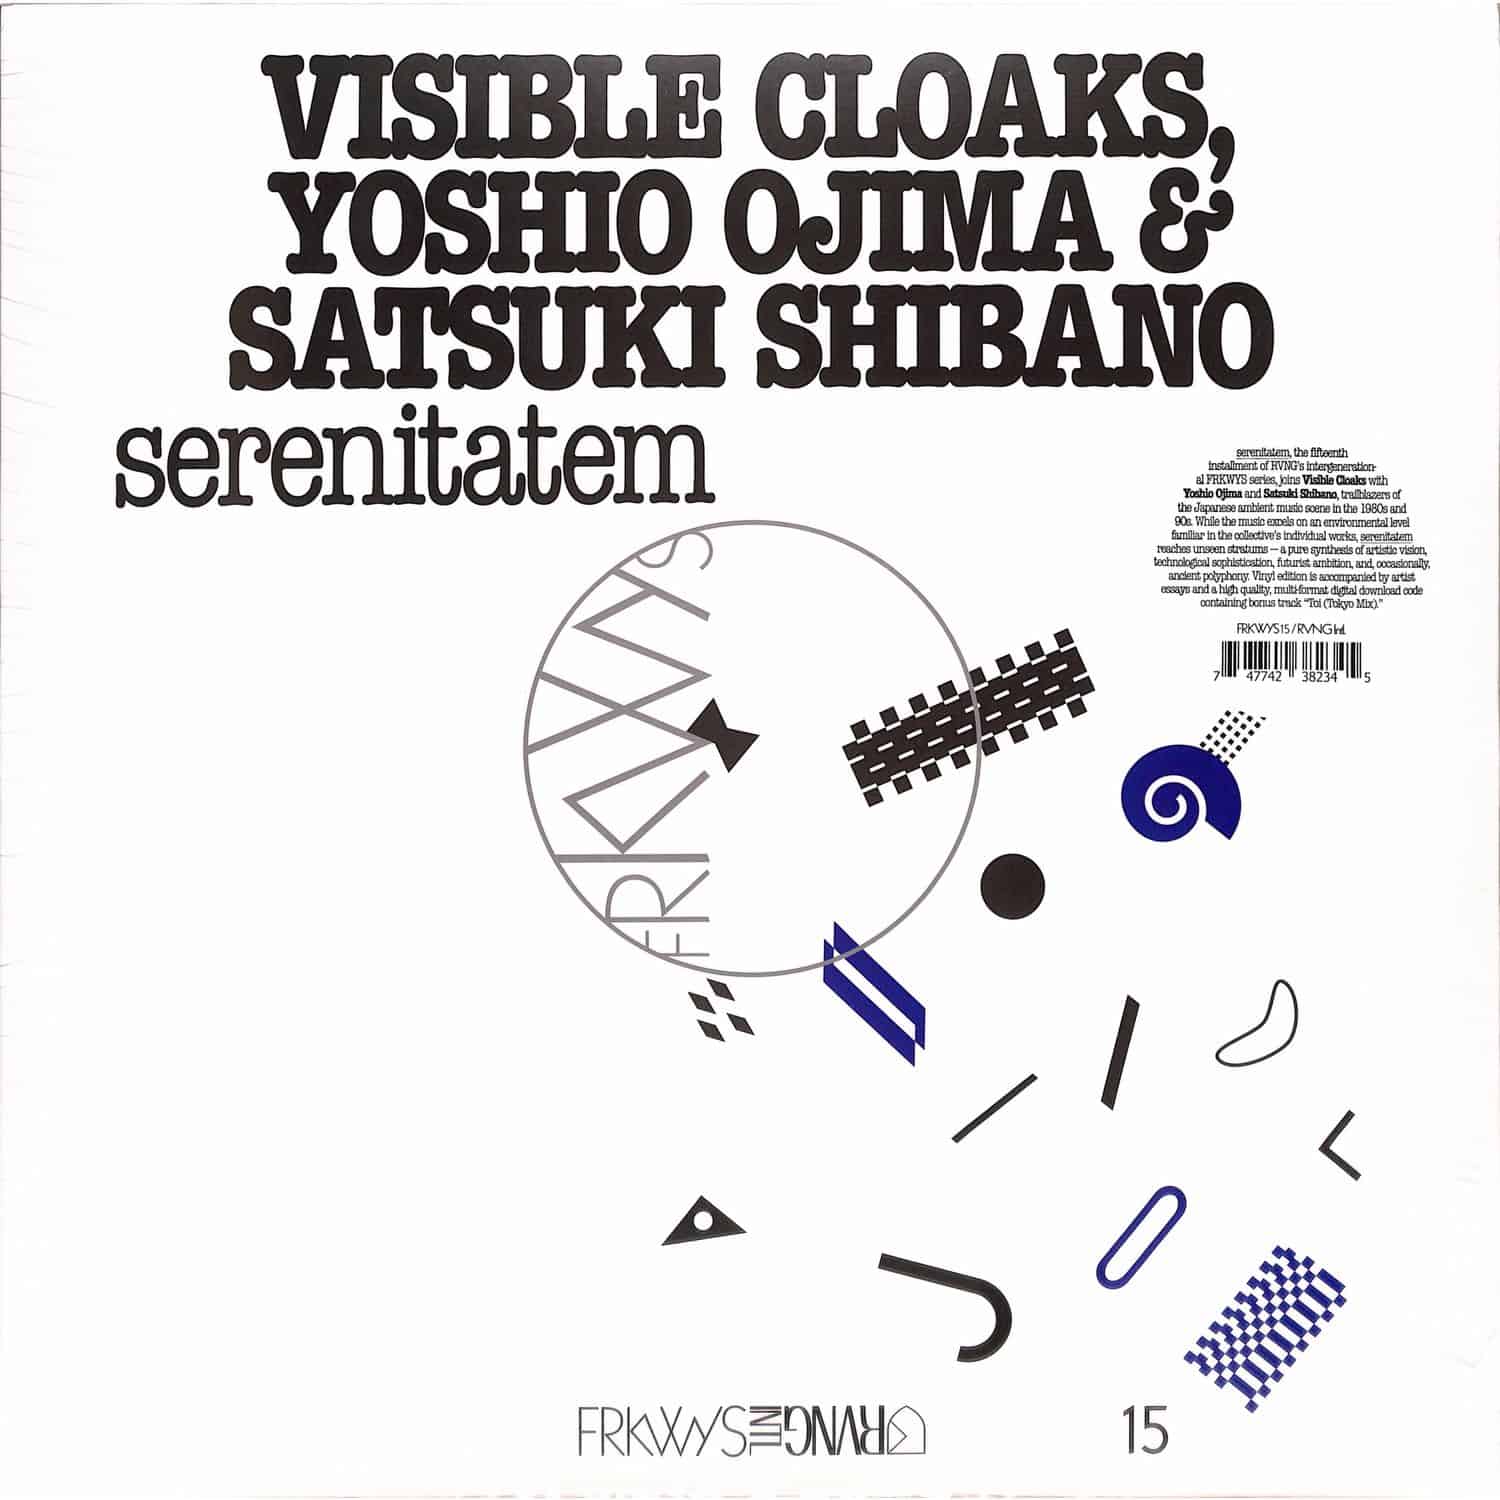 Visible Cloaks, Yoshio Ojima & Satsuki Shibano - FRKWYS VOL.15: SERENITATEM 